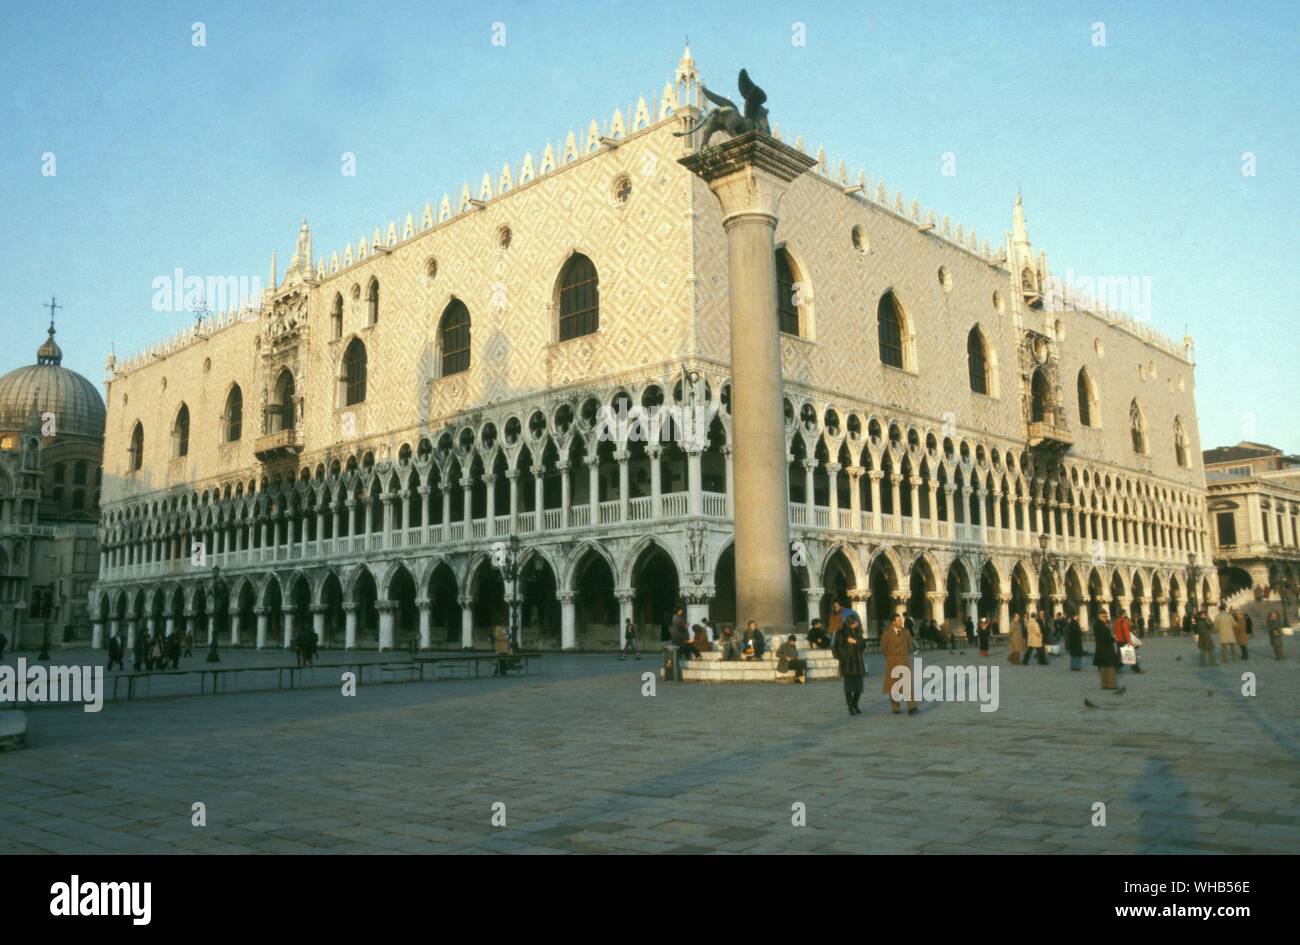 Der Dogenpalast - Venedig - Der Dogenpalast ist ein gotischer Palast in Venedig. In Italienisch ist der Palazzo Ducale di Venezia aufgerufen wird. Der Palast war die Residenz des Dogen von Venedig. Stockfoto